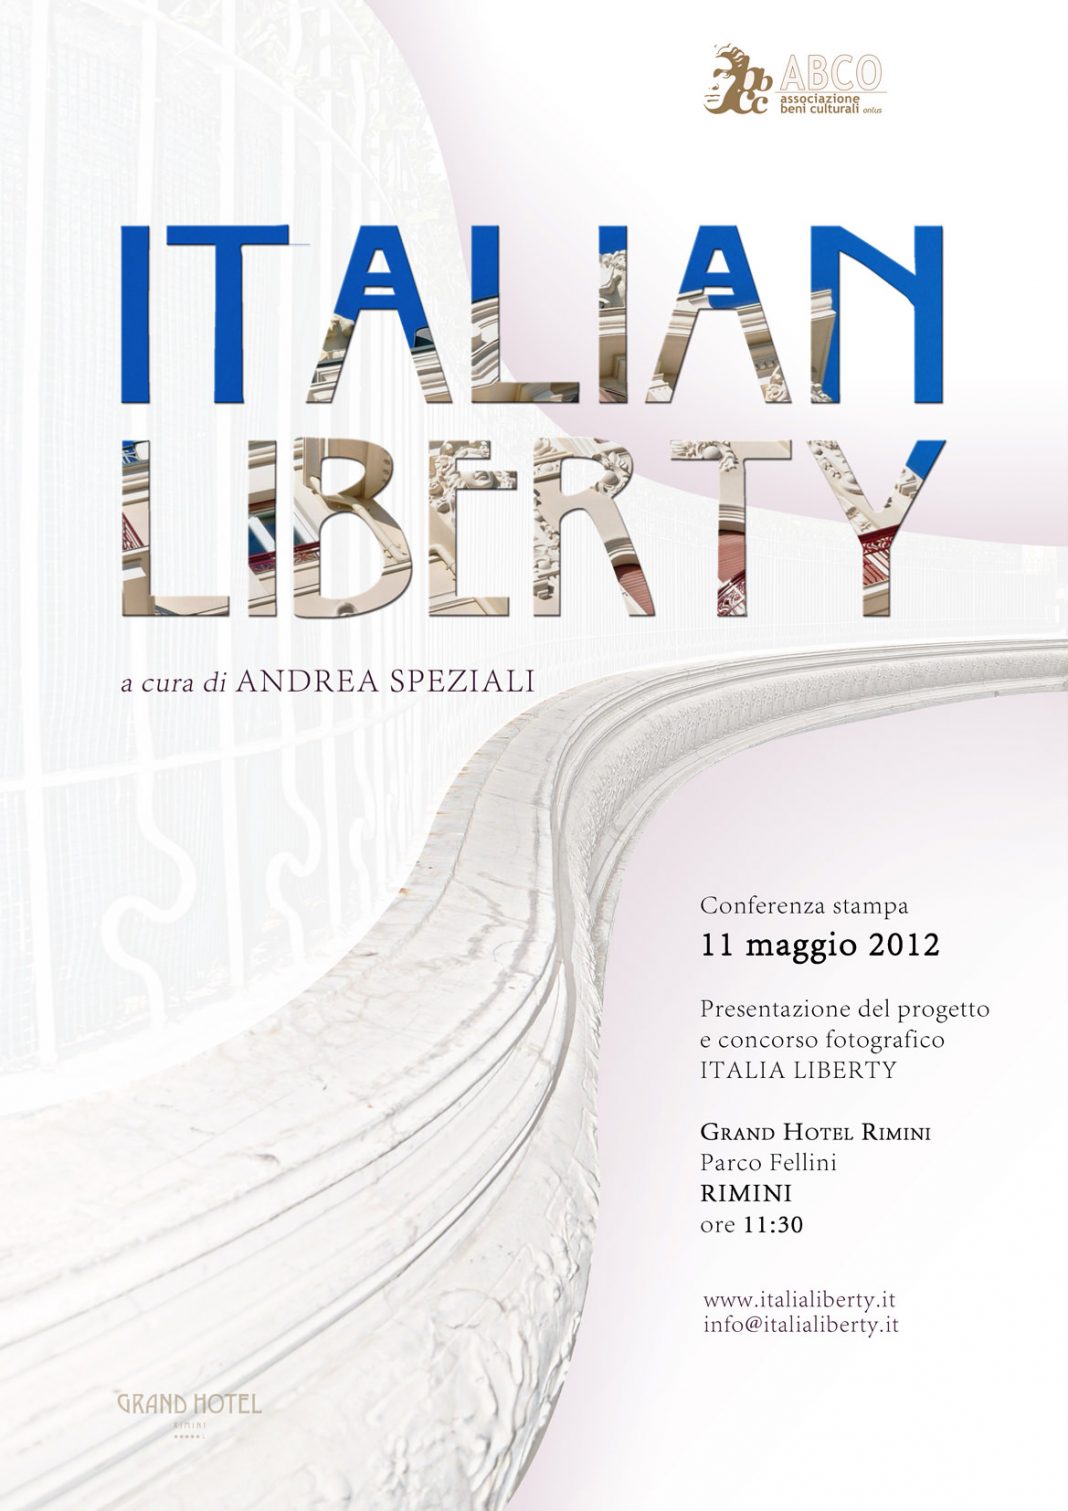 ITALIAN LIBERTY, dalla Romagna all’Italia Libertyhttps://www.exibart.com/repository/media/eventi/2012/04/italian-liberty-dalla-romagna-all8217italia-liberty-1068x1511.jpg